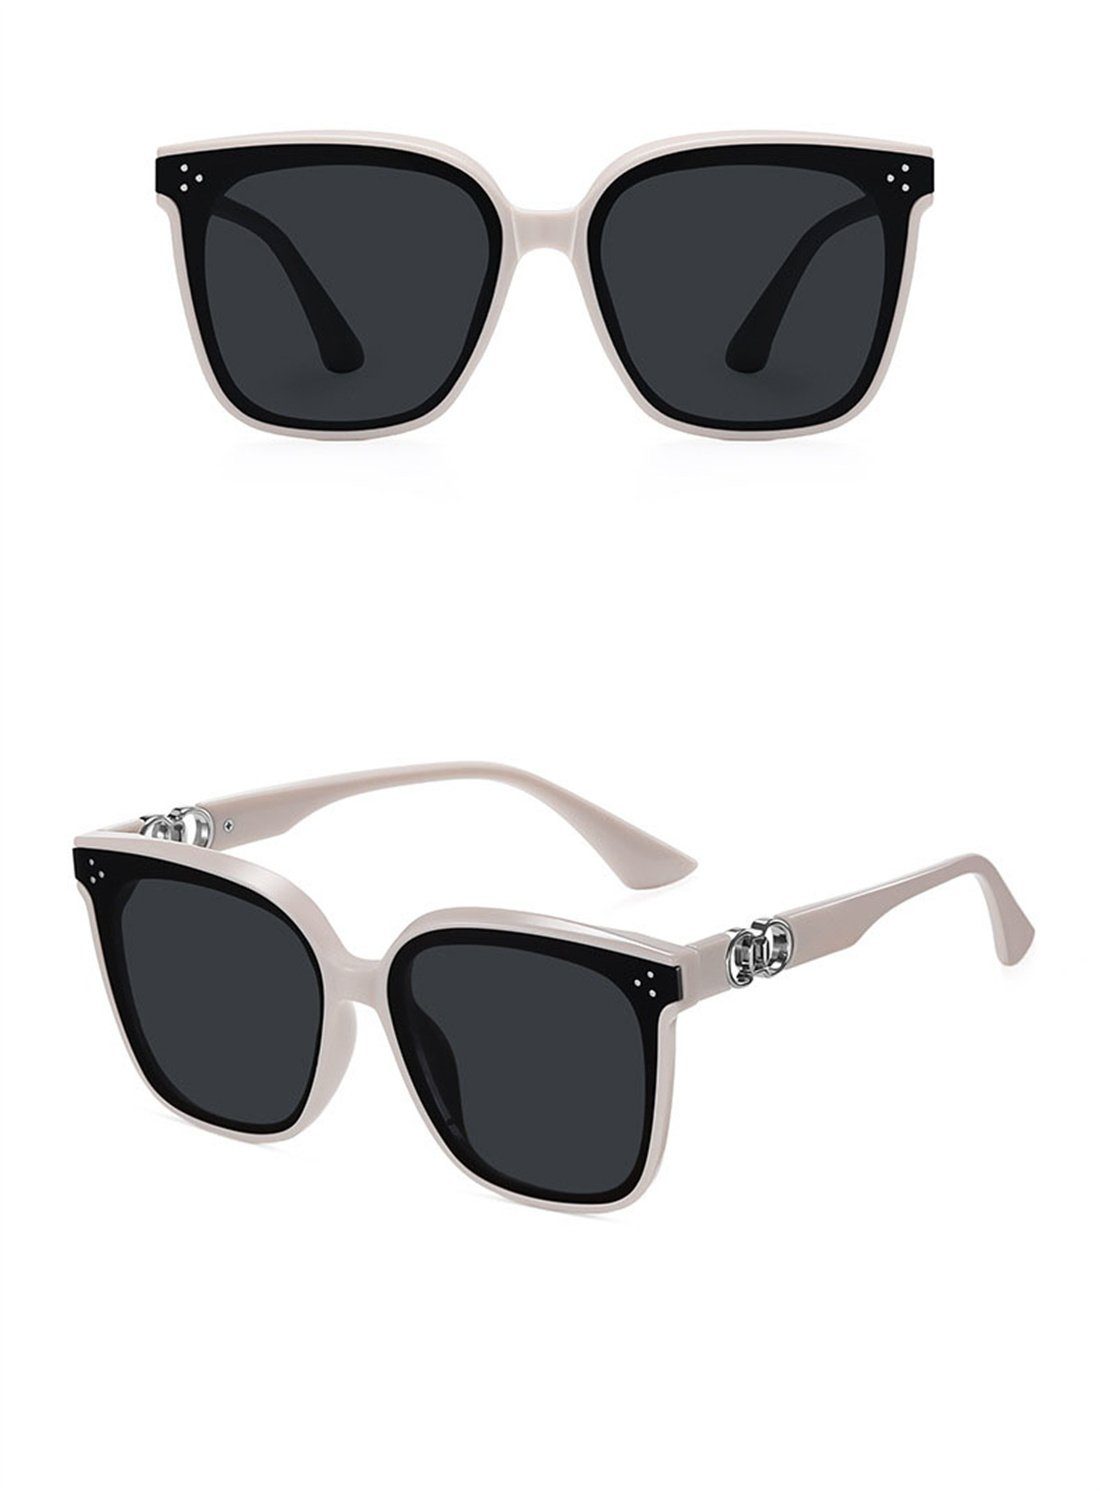 DÖRÖY Sonnenbrille Outdoor-Sonnenbrillen für Männer Mode-Sonnenbrillen und Frauen